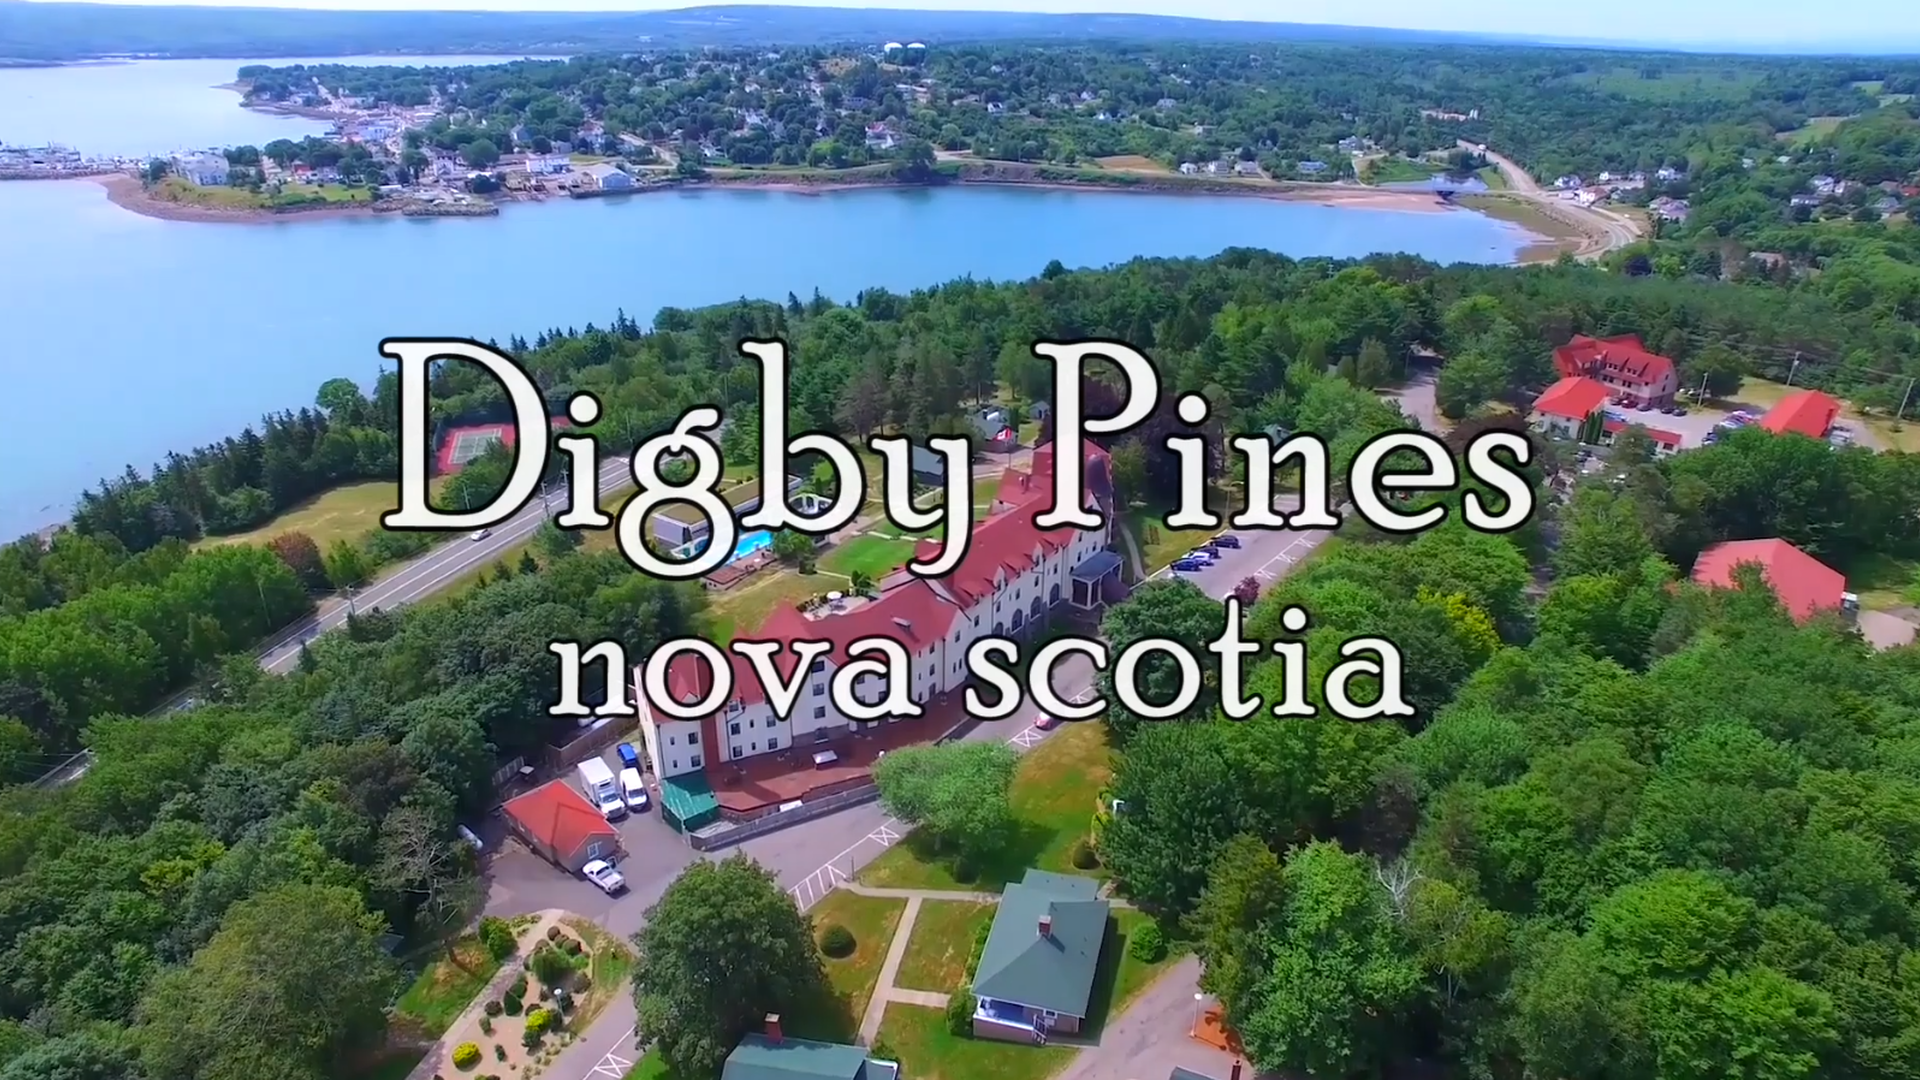 Nova Scotia Travel Special: Digby Pines Golf Resort